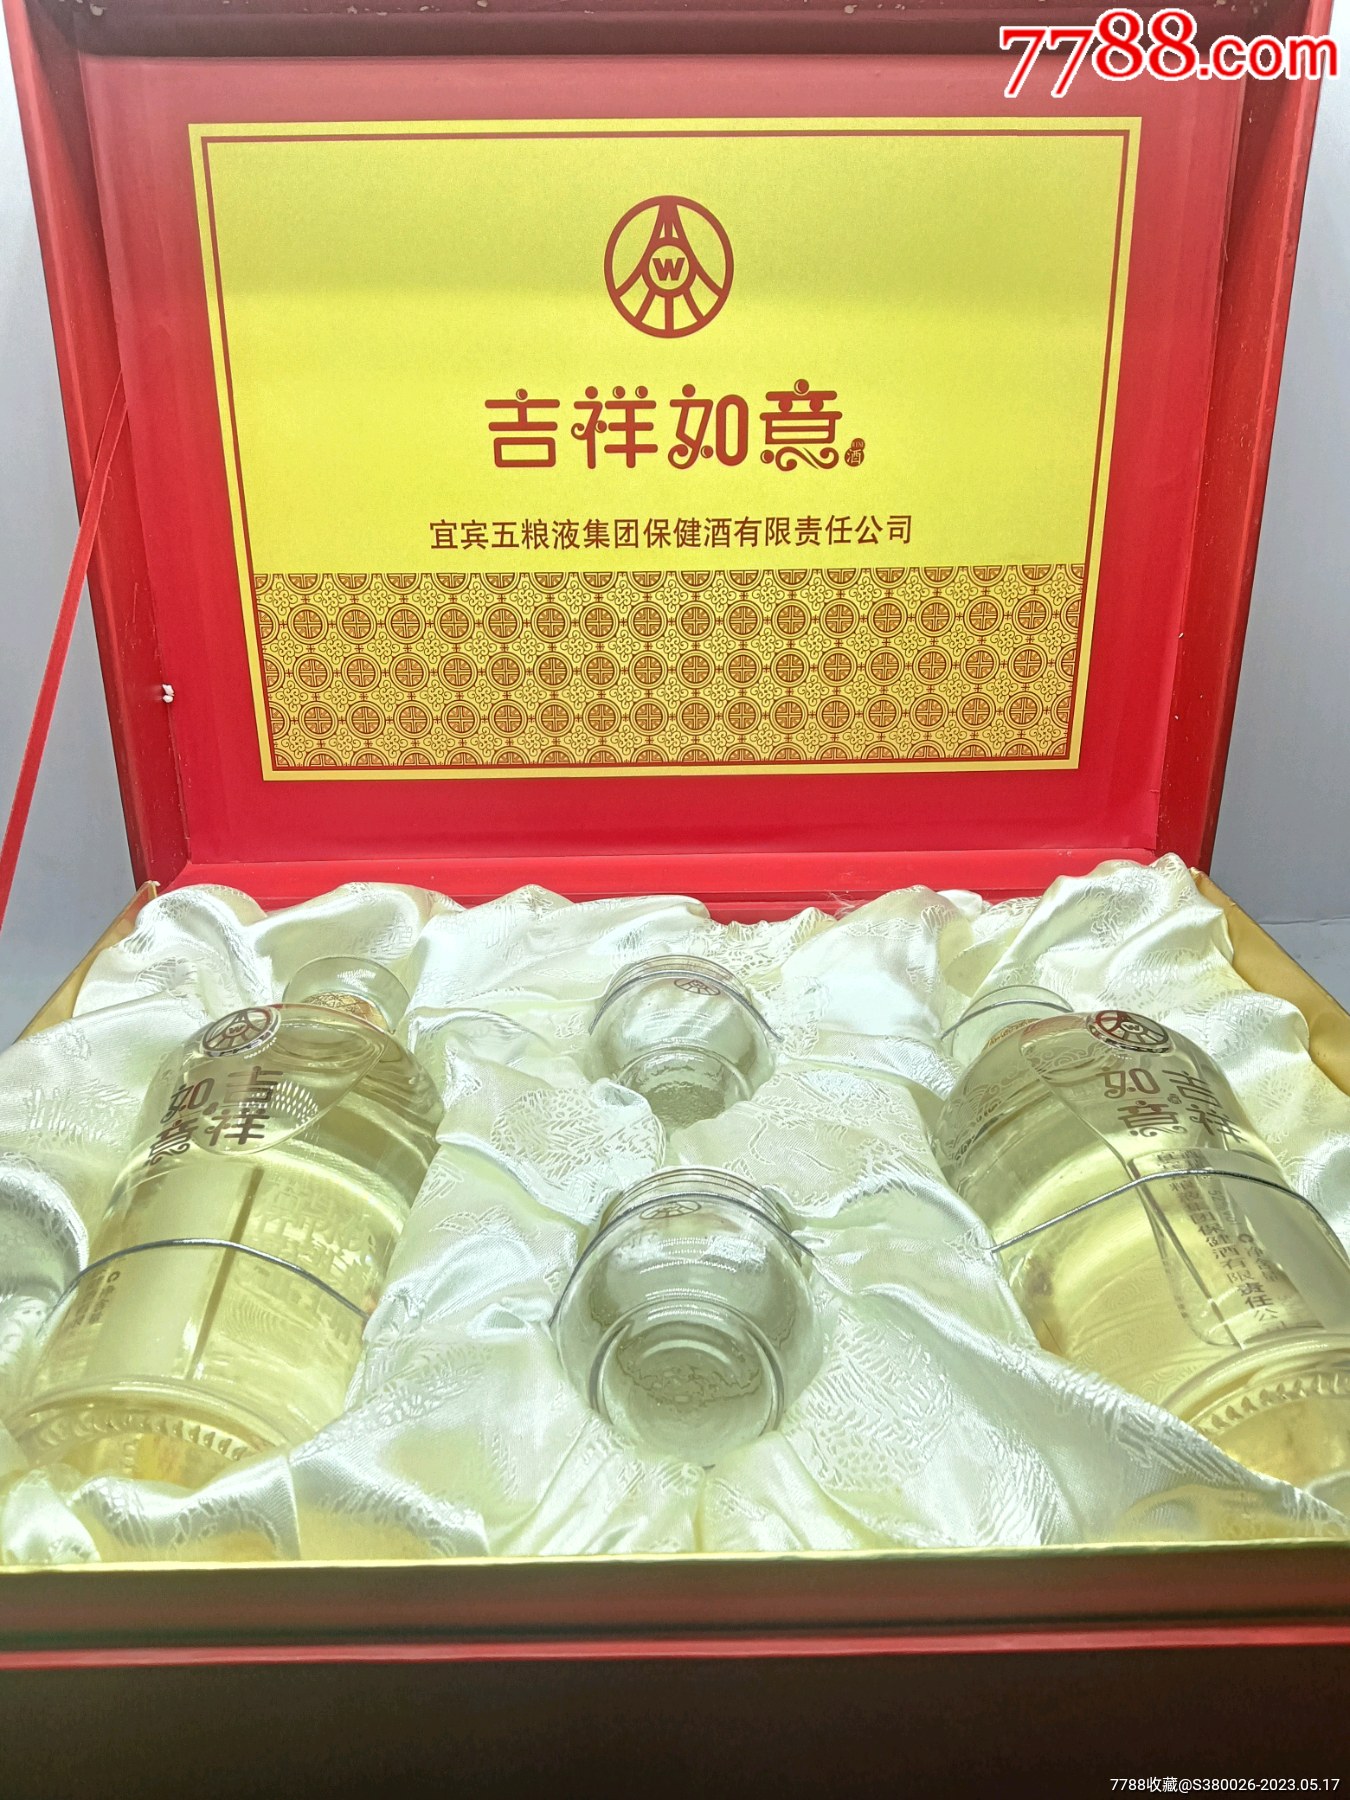 2009年四川宜宾五粮液出品52度浓香型白酒吉祥如意500毫升2瓶礼盒装